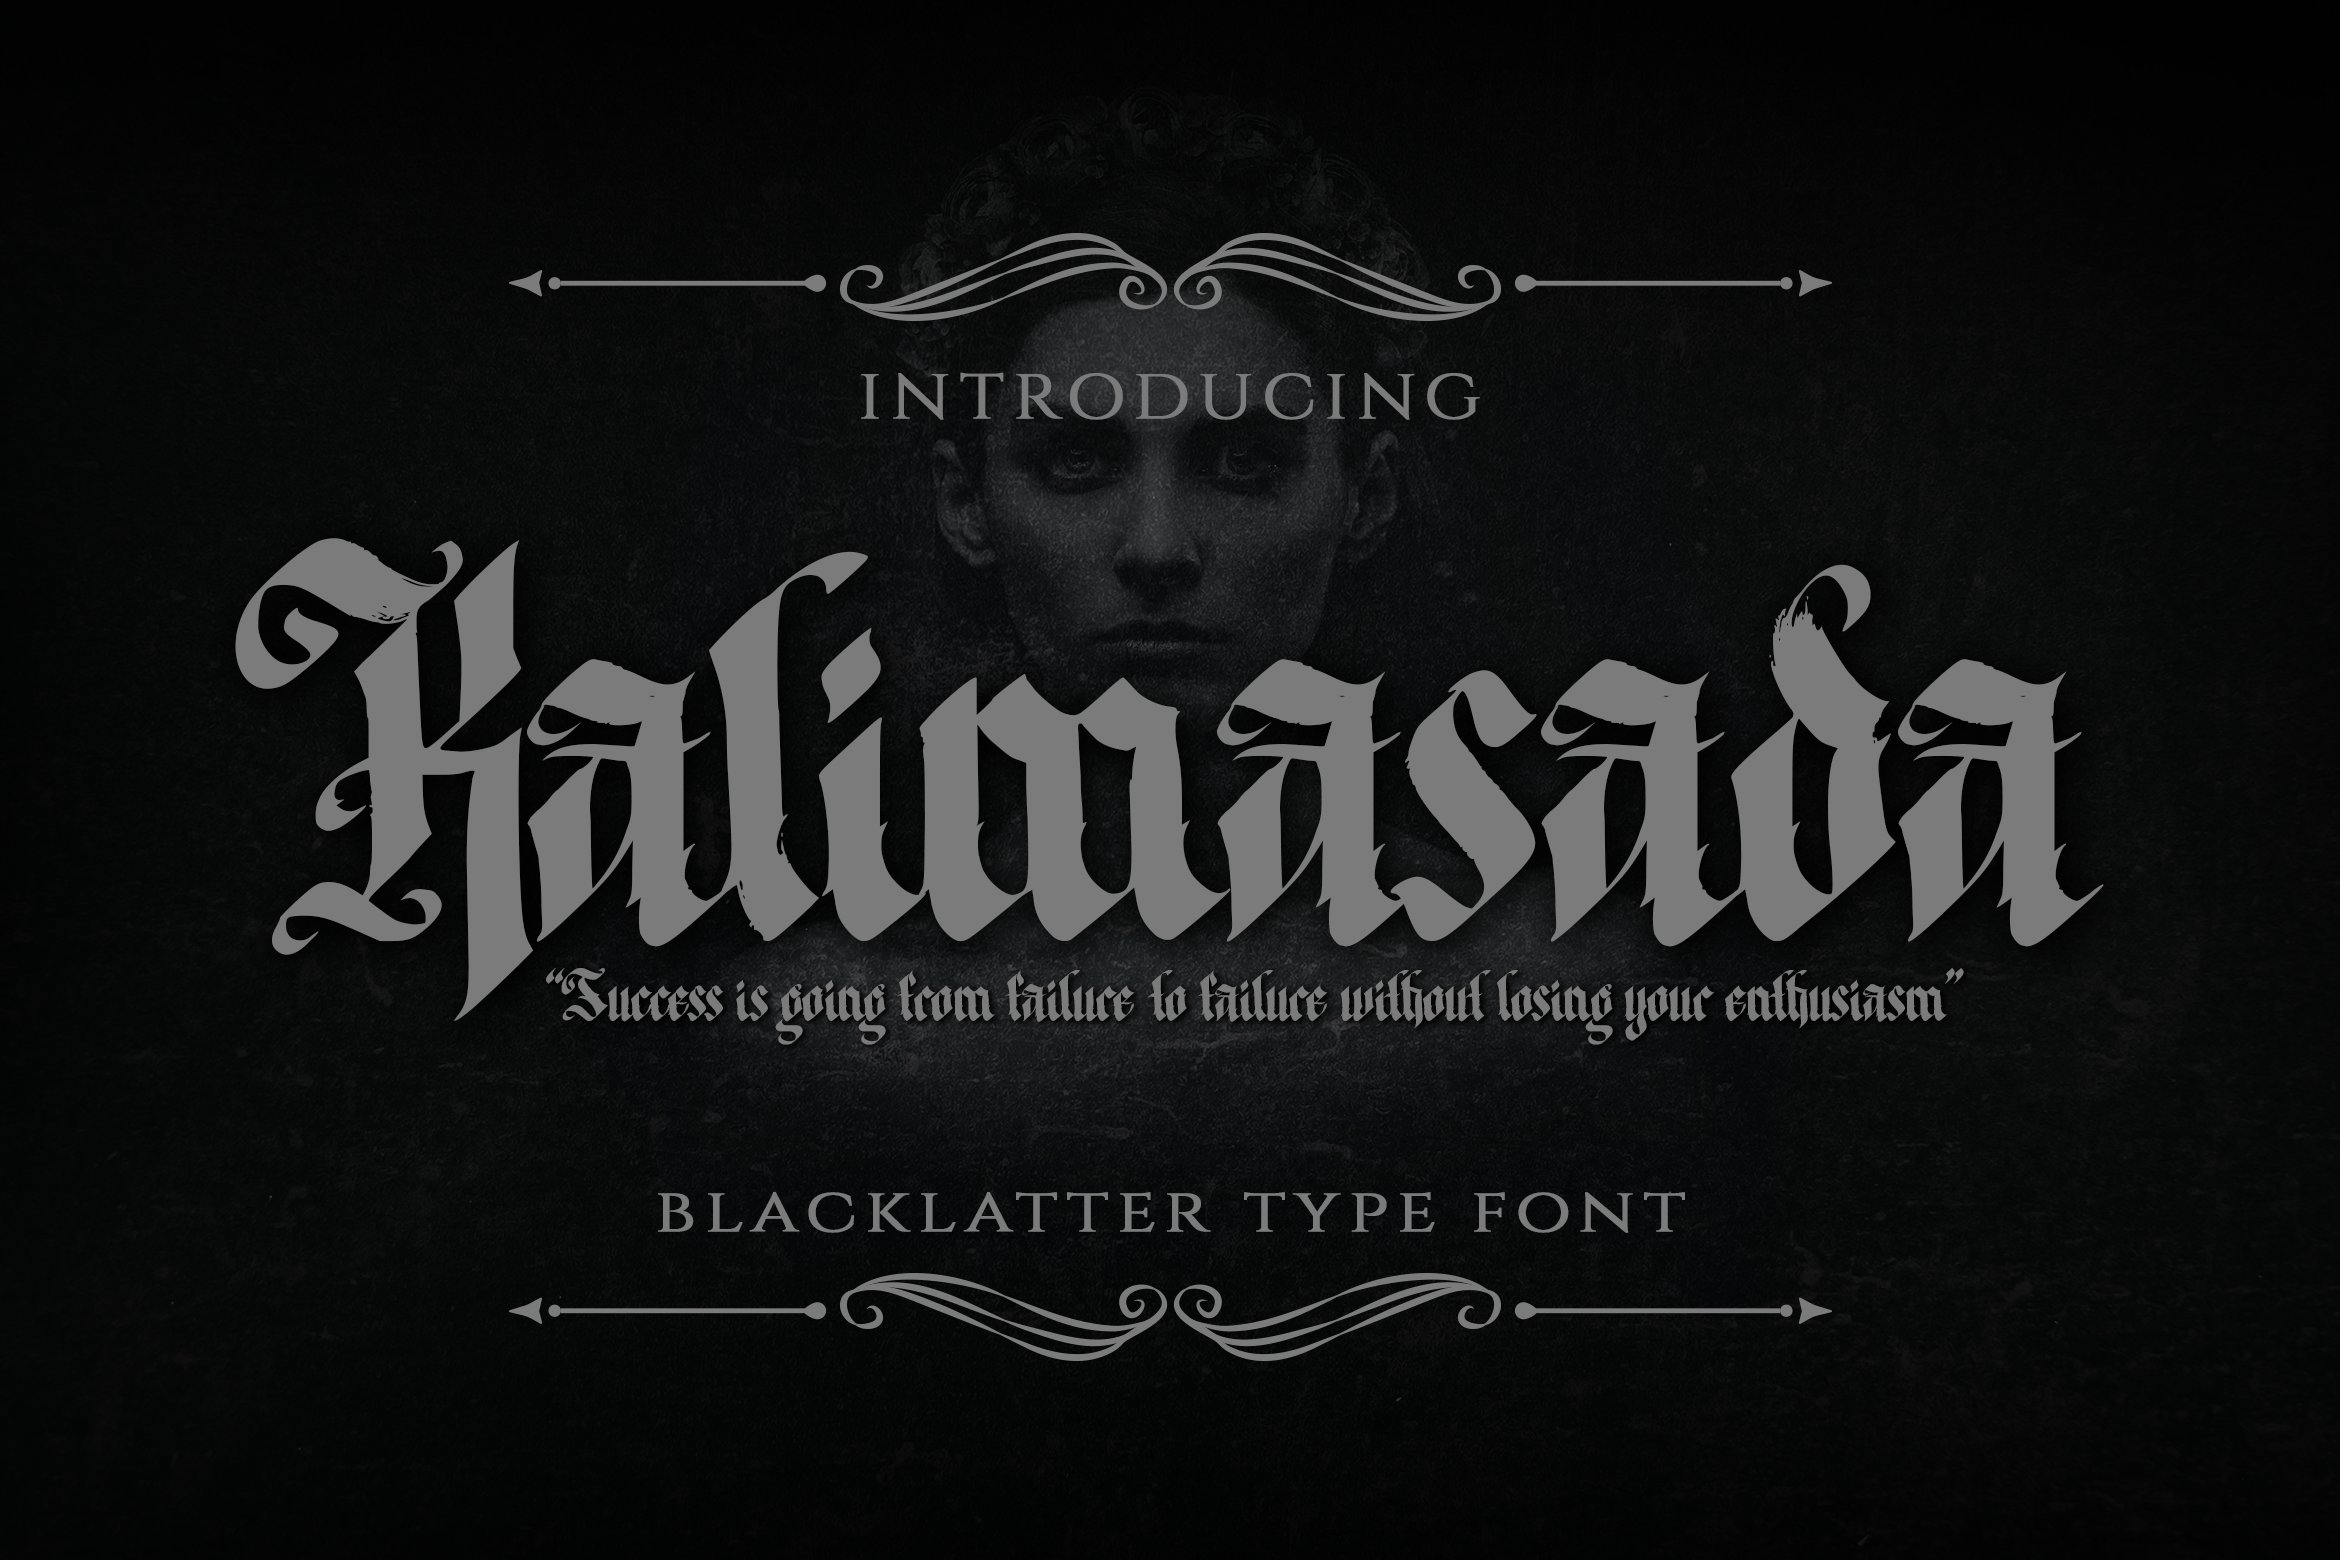 Kalimasada - Blackletter Type Font cover image.